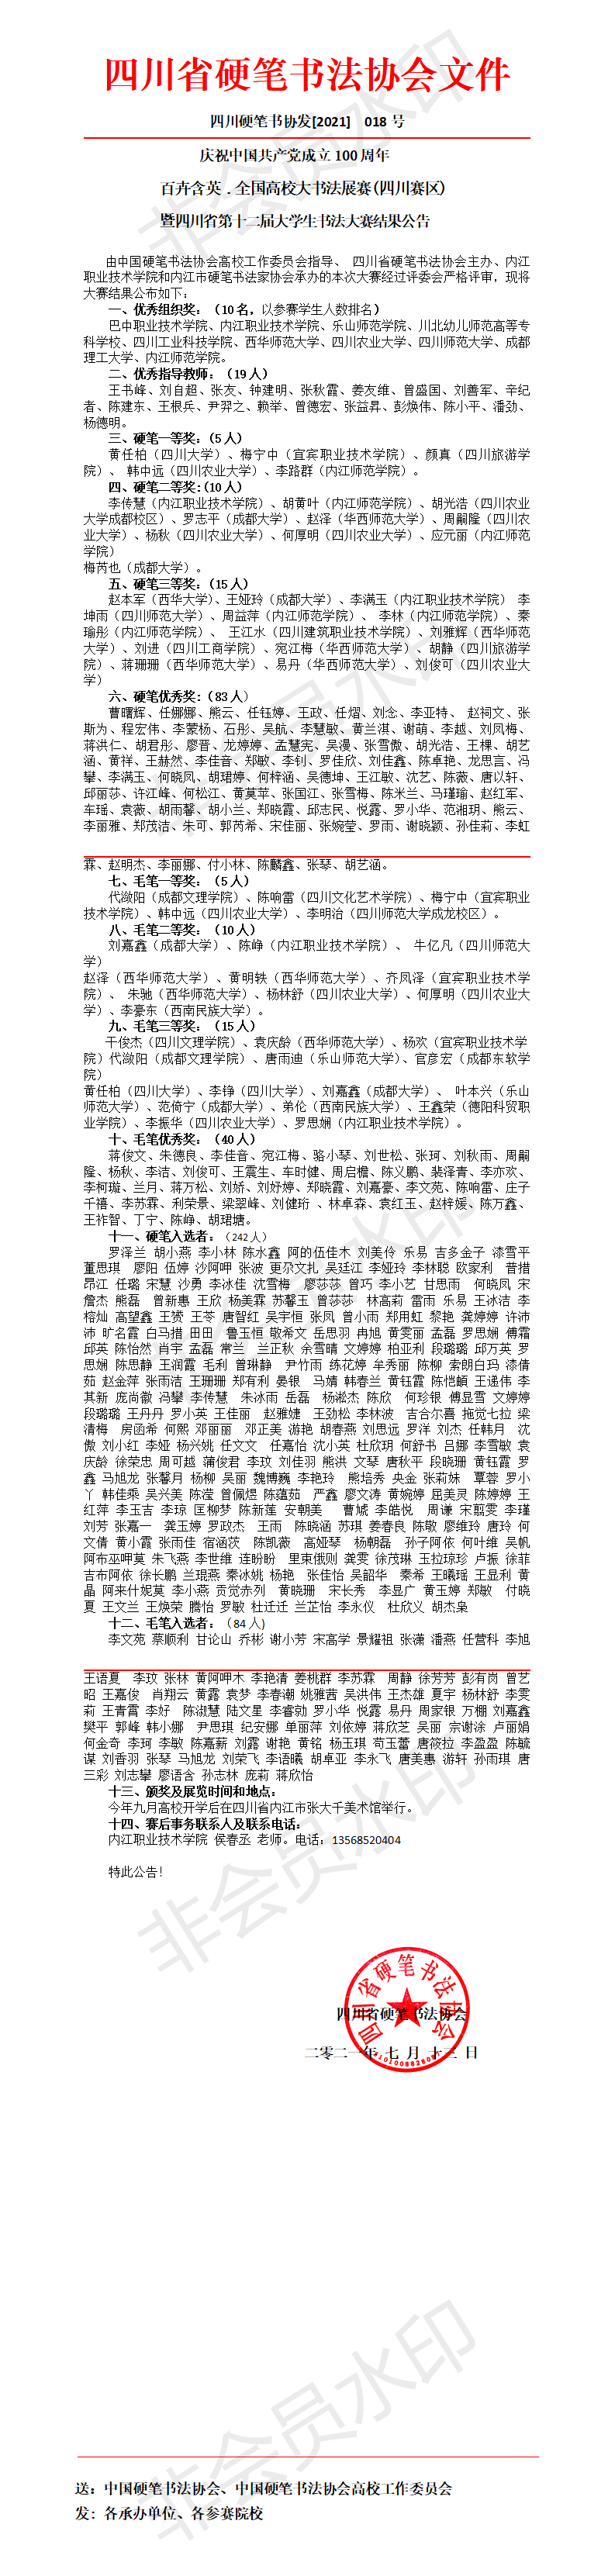 6_四川省第十二届大学生书法大赛结果公告（核对稿）_01.png-793_3322